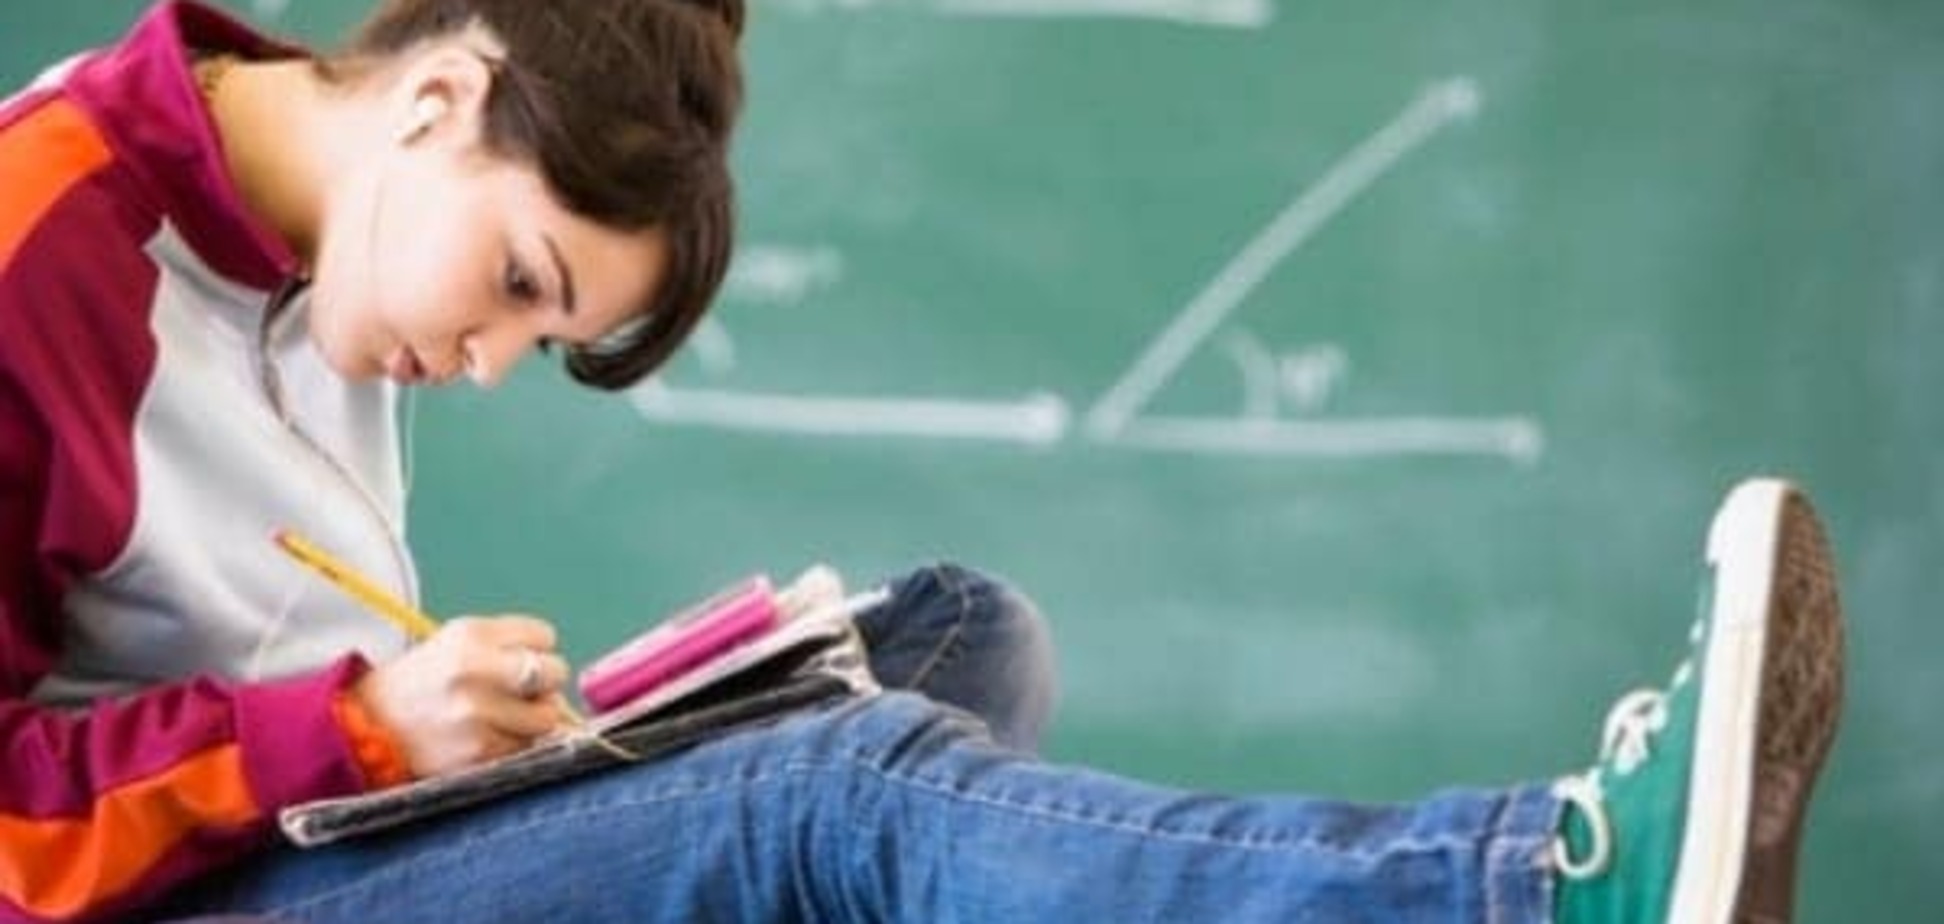 На оценки детей в школе влияет депрессия их родителей - ученые